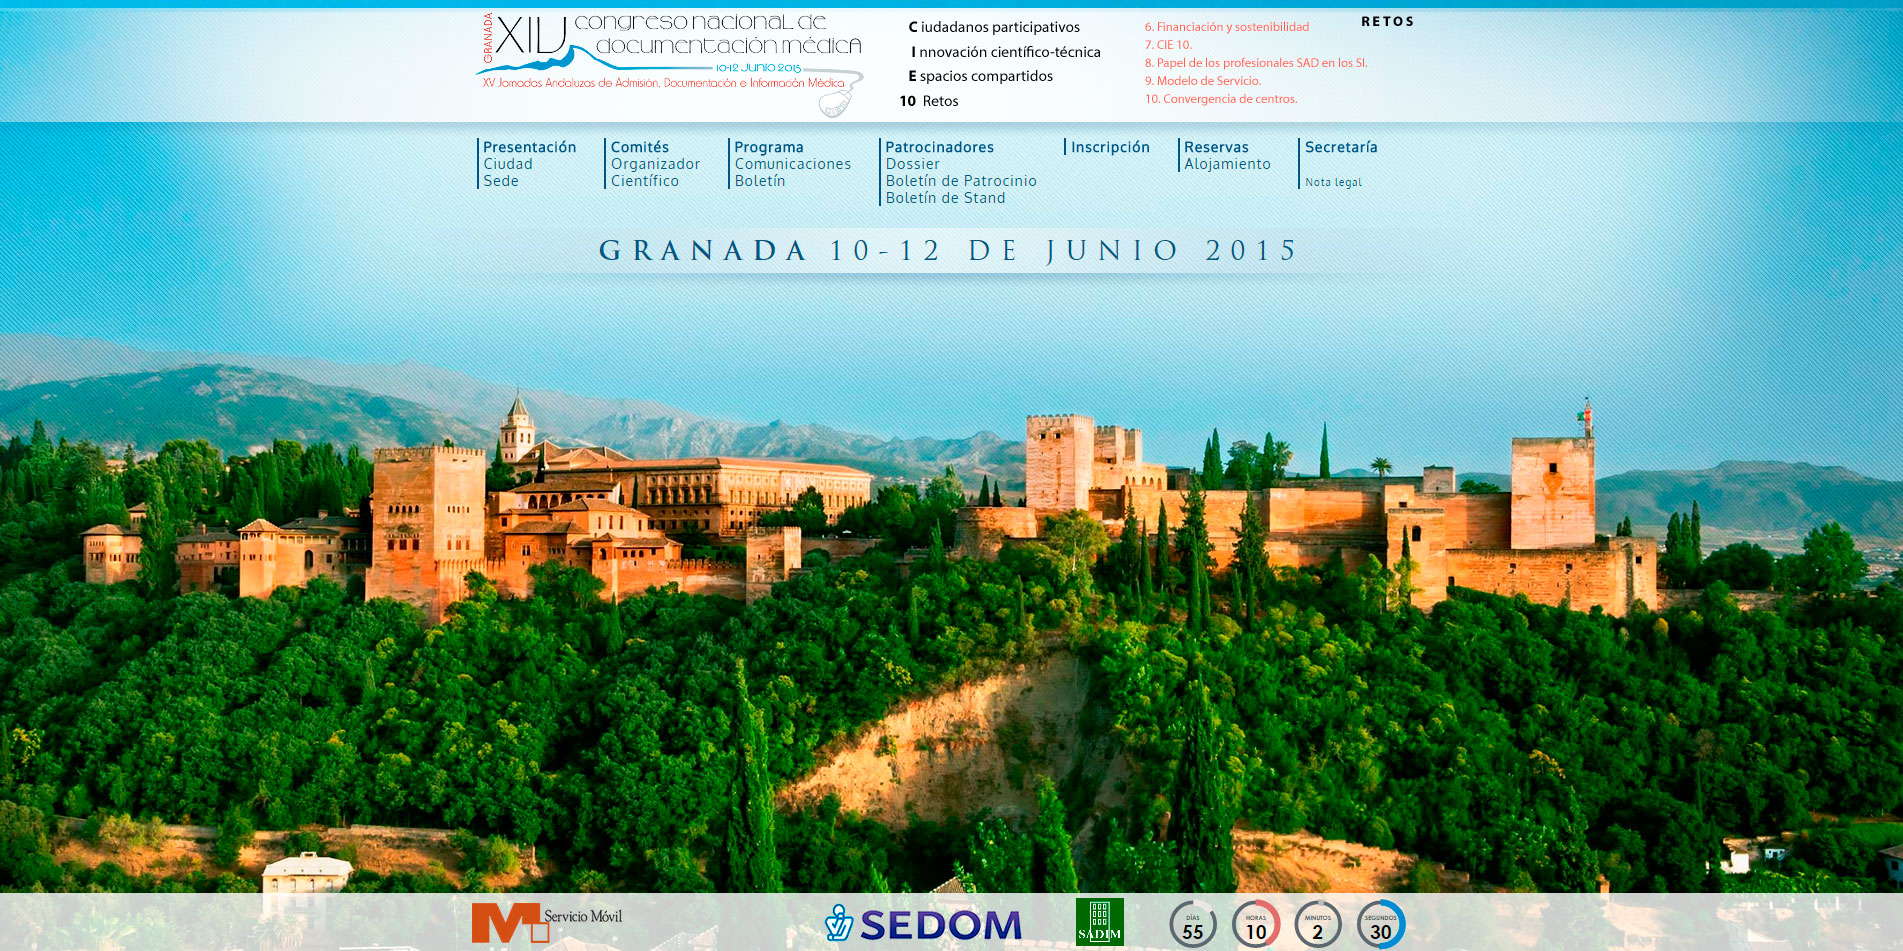 XIV Congreso Nacional de Documentación Médica y XV Jornadas Andaluzas de Admisión y Documentación Médica